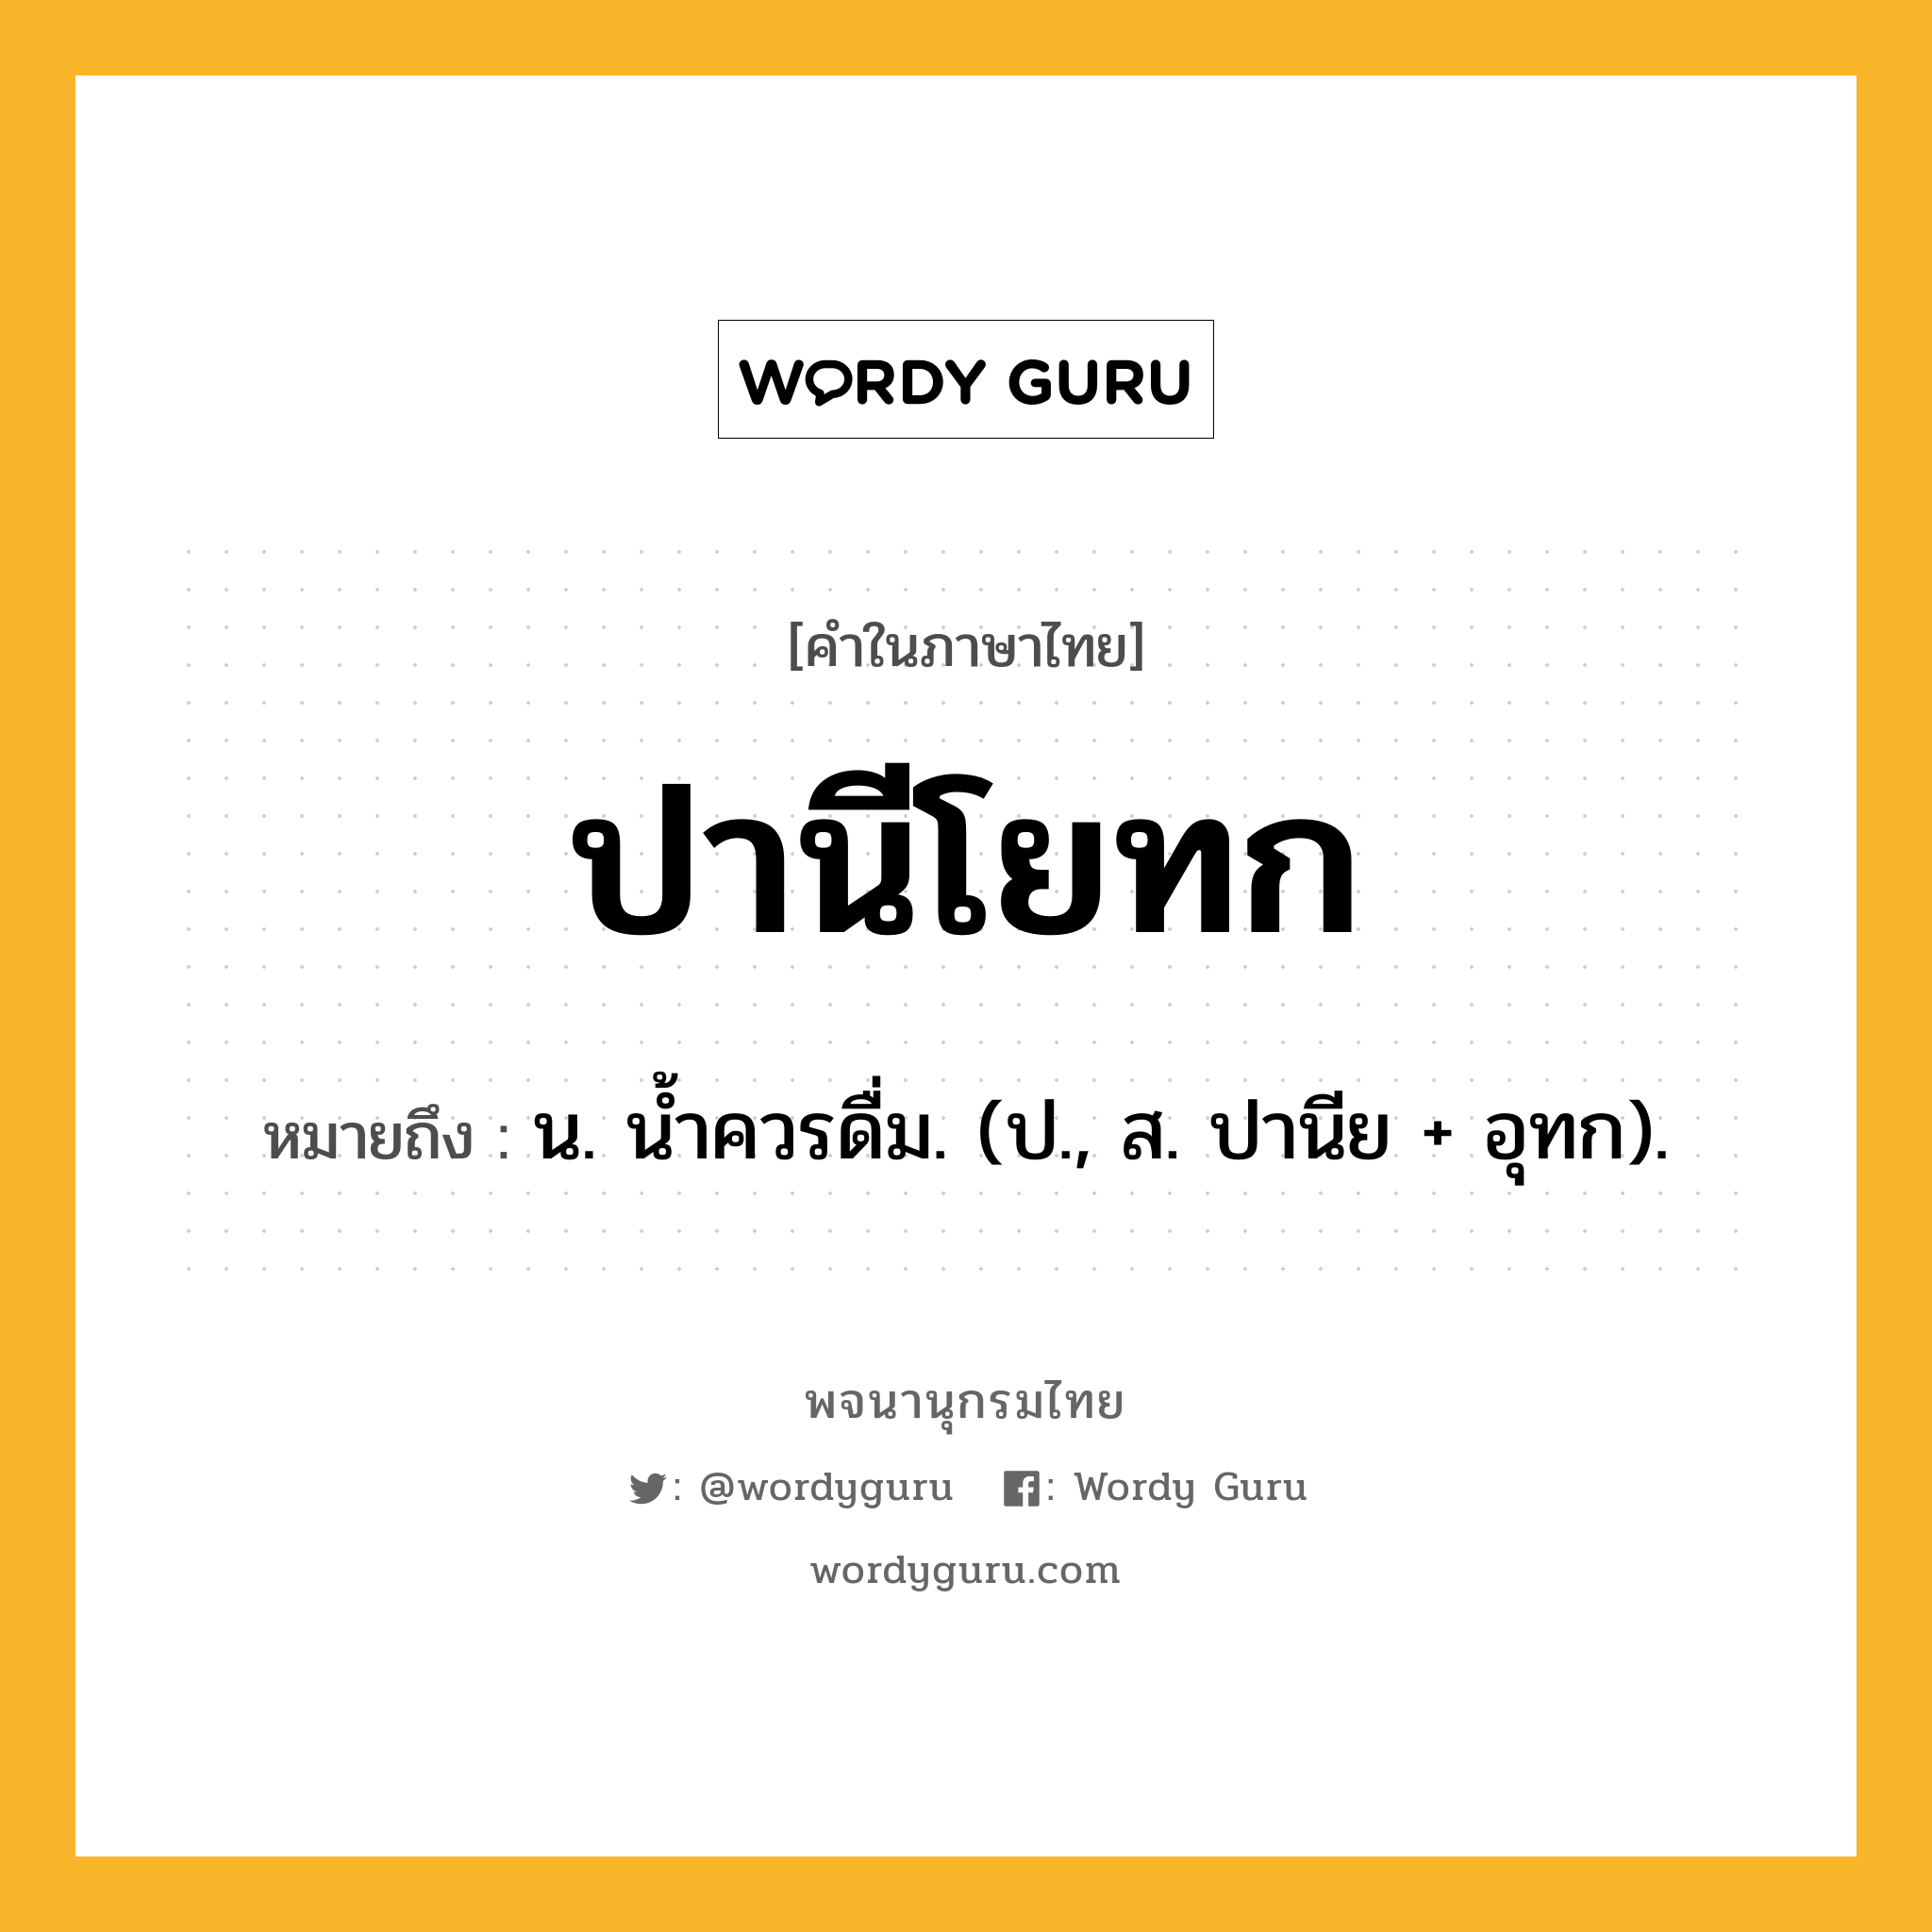 ปานีโยทก หมายถึงอะไร?, คำในภาษาไทย ปานีโยทก หมายถึง น. นํ้าควรดื่ม. (ป., ส. ปานีย + อุทก).